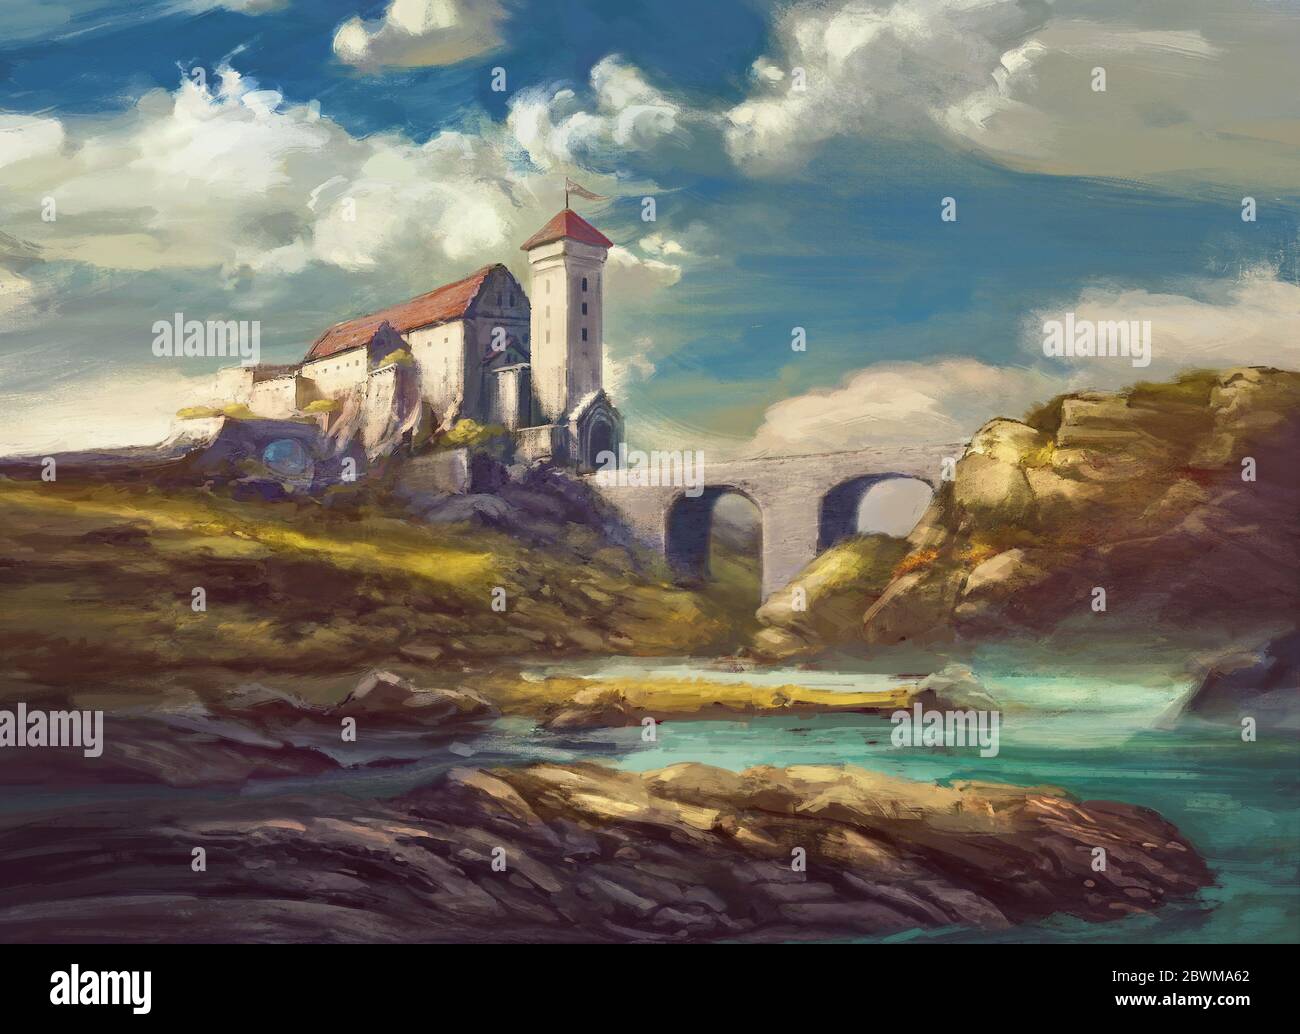 Landschaft mit mittelalterlichen Burg auf Klippe, Steinbrücke über den Fluss, Felsen, schöner Himmel mit weißen Wolken - Malerei Fantasy-Szene, fiktives Schloss Stockfoto